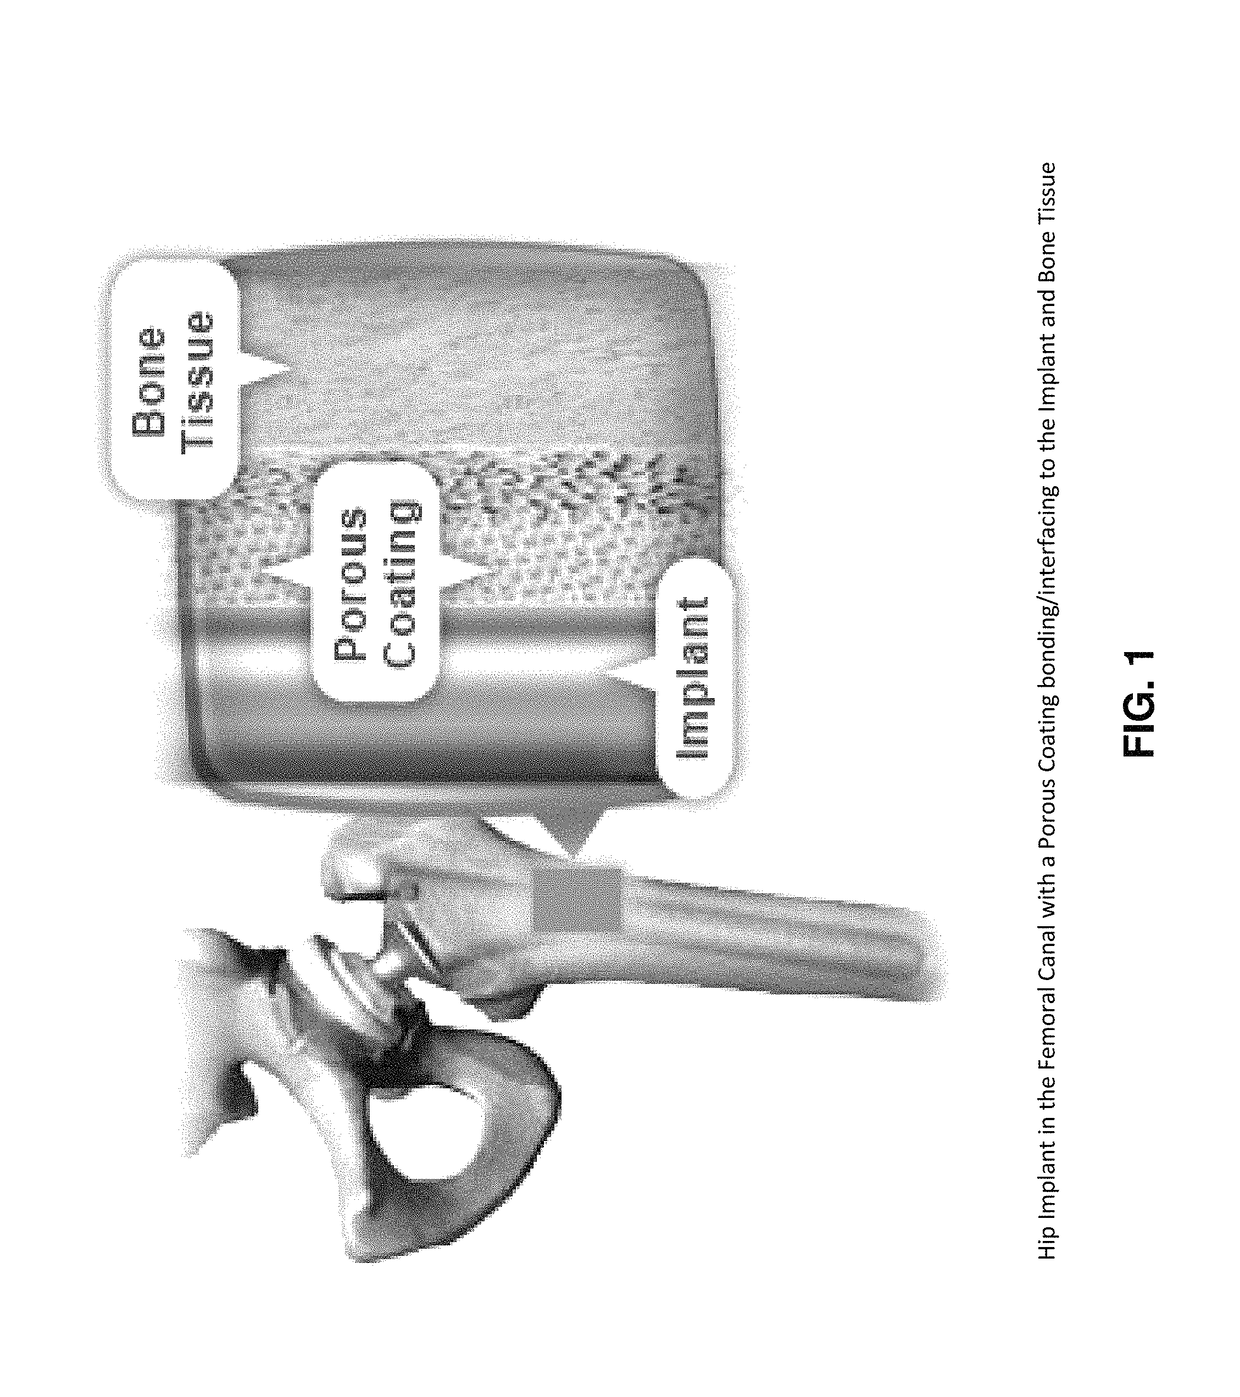 Porous coating for orthopedic implant utilizing porous, shape memory materials